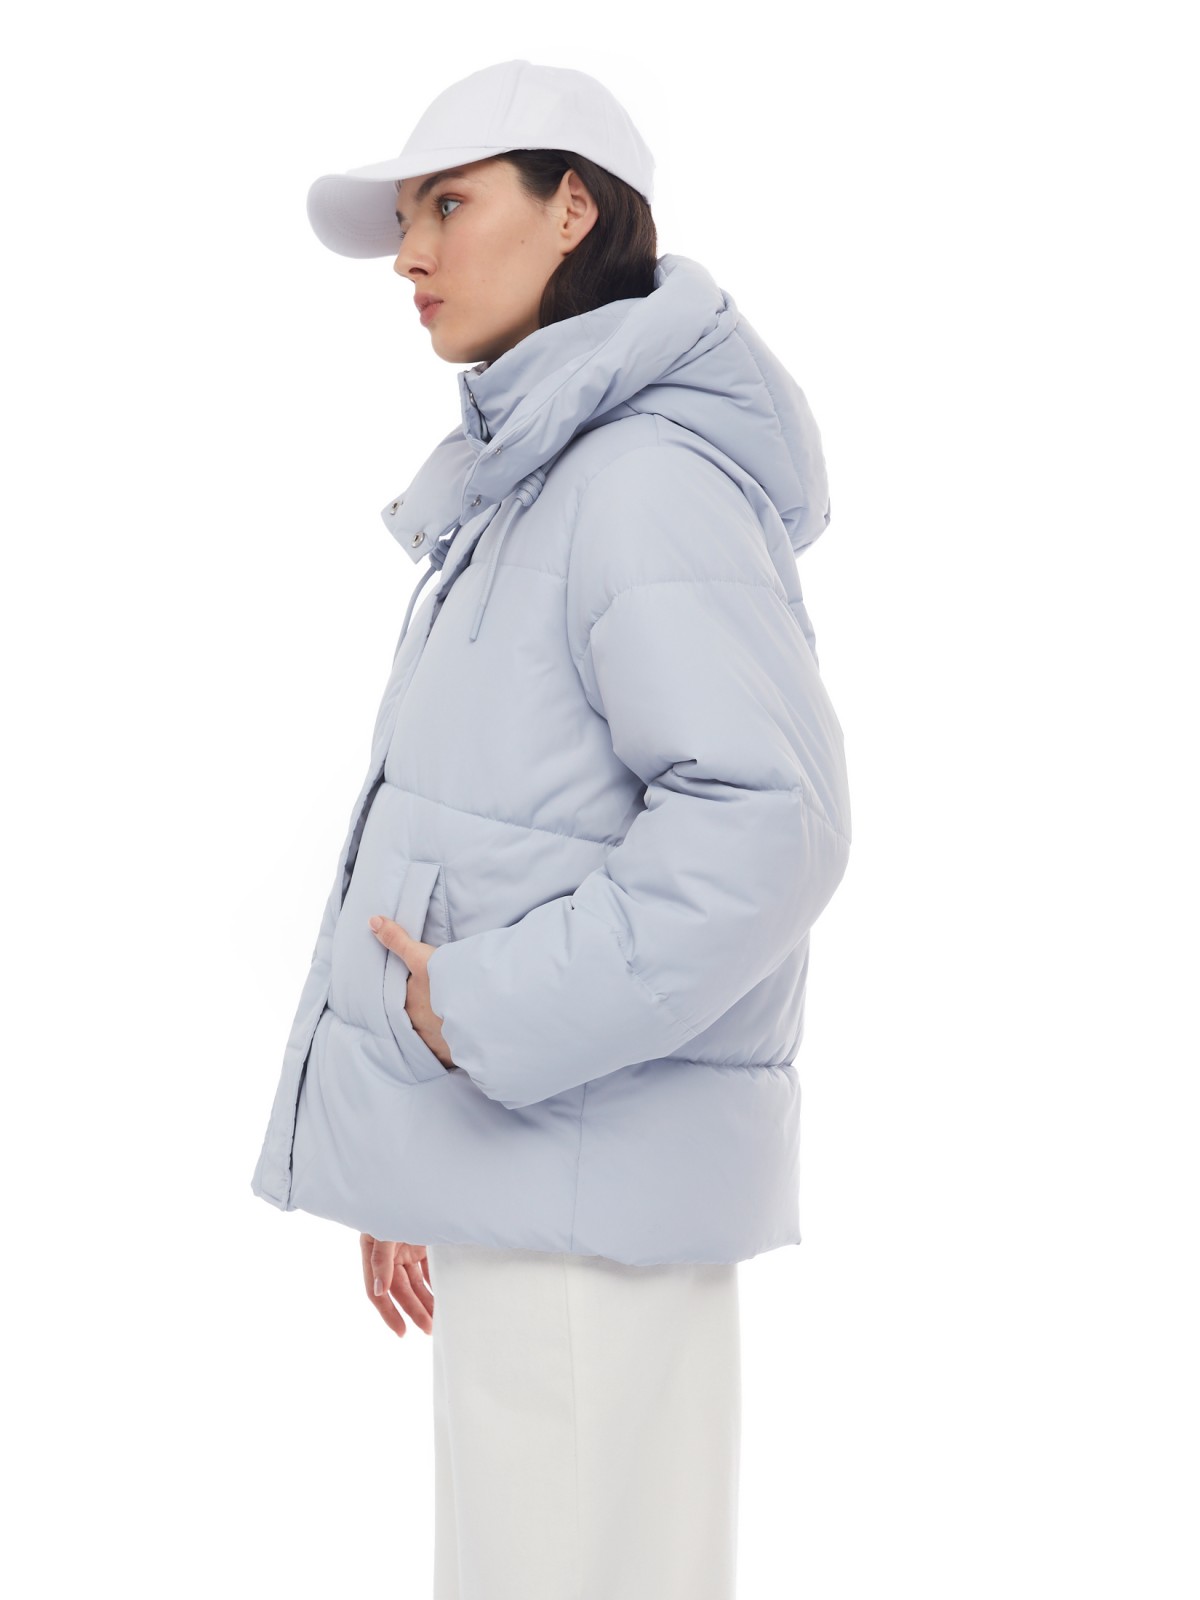 Тёплая укороченная дутая куртка с капюшоном zolla 024125112434, цвет светло-голубой, размер XS - фото 3